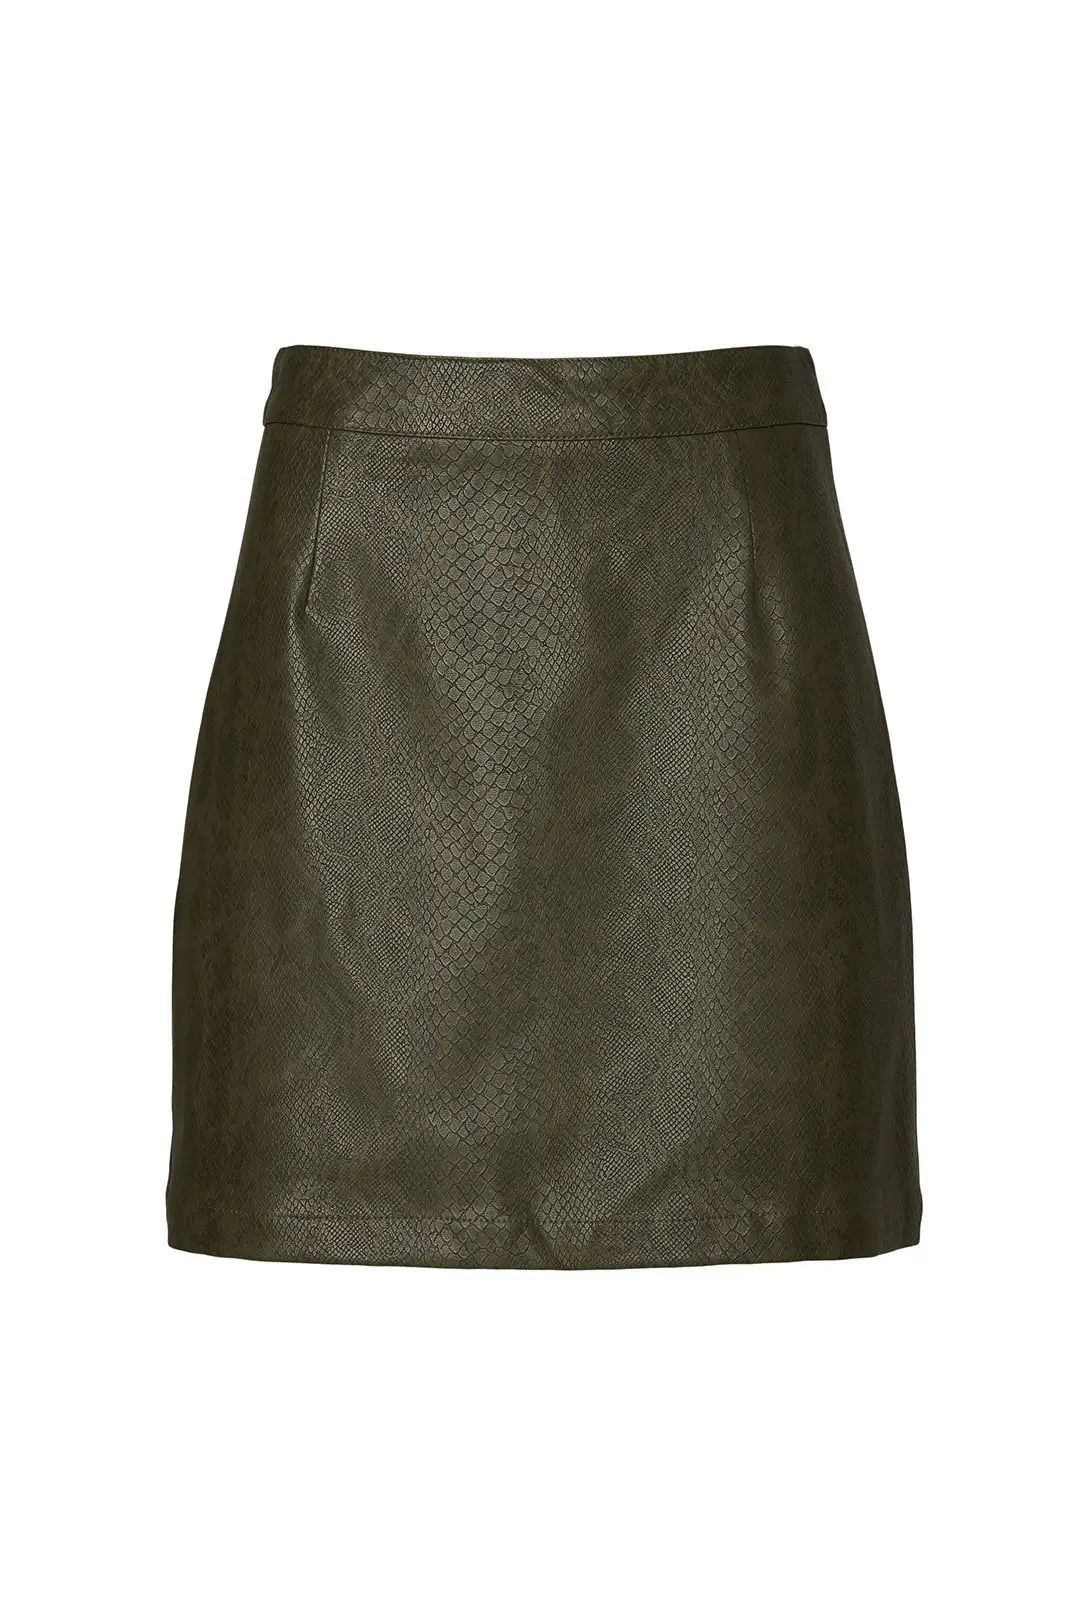 BB Dakota Green Snakeskin Mini Skirt | Rent The Runway